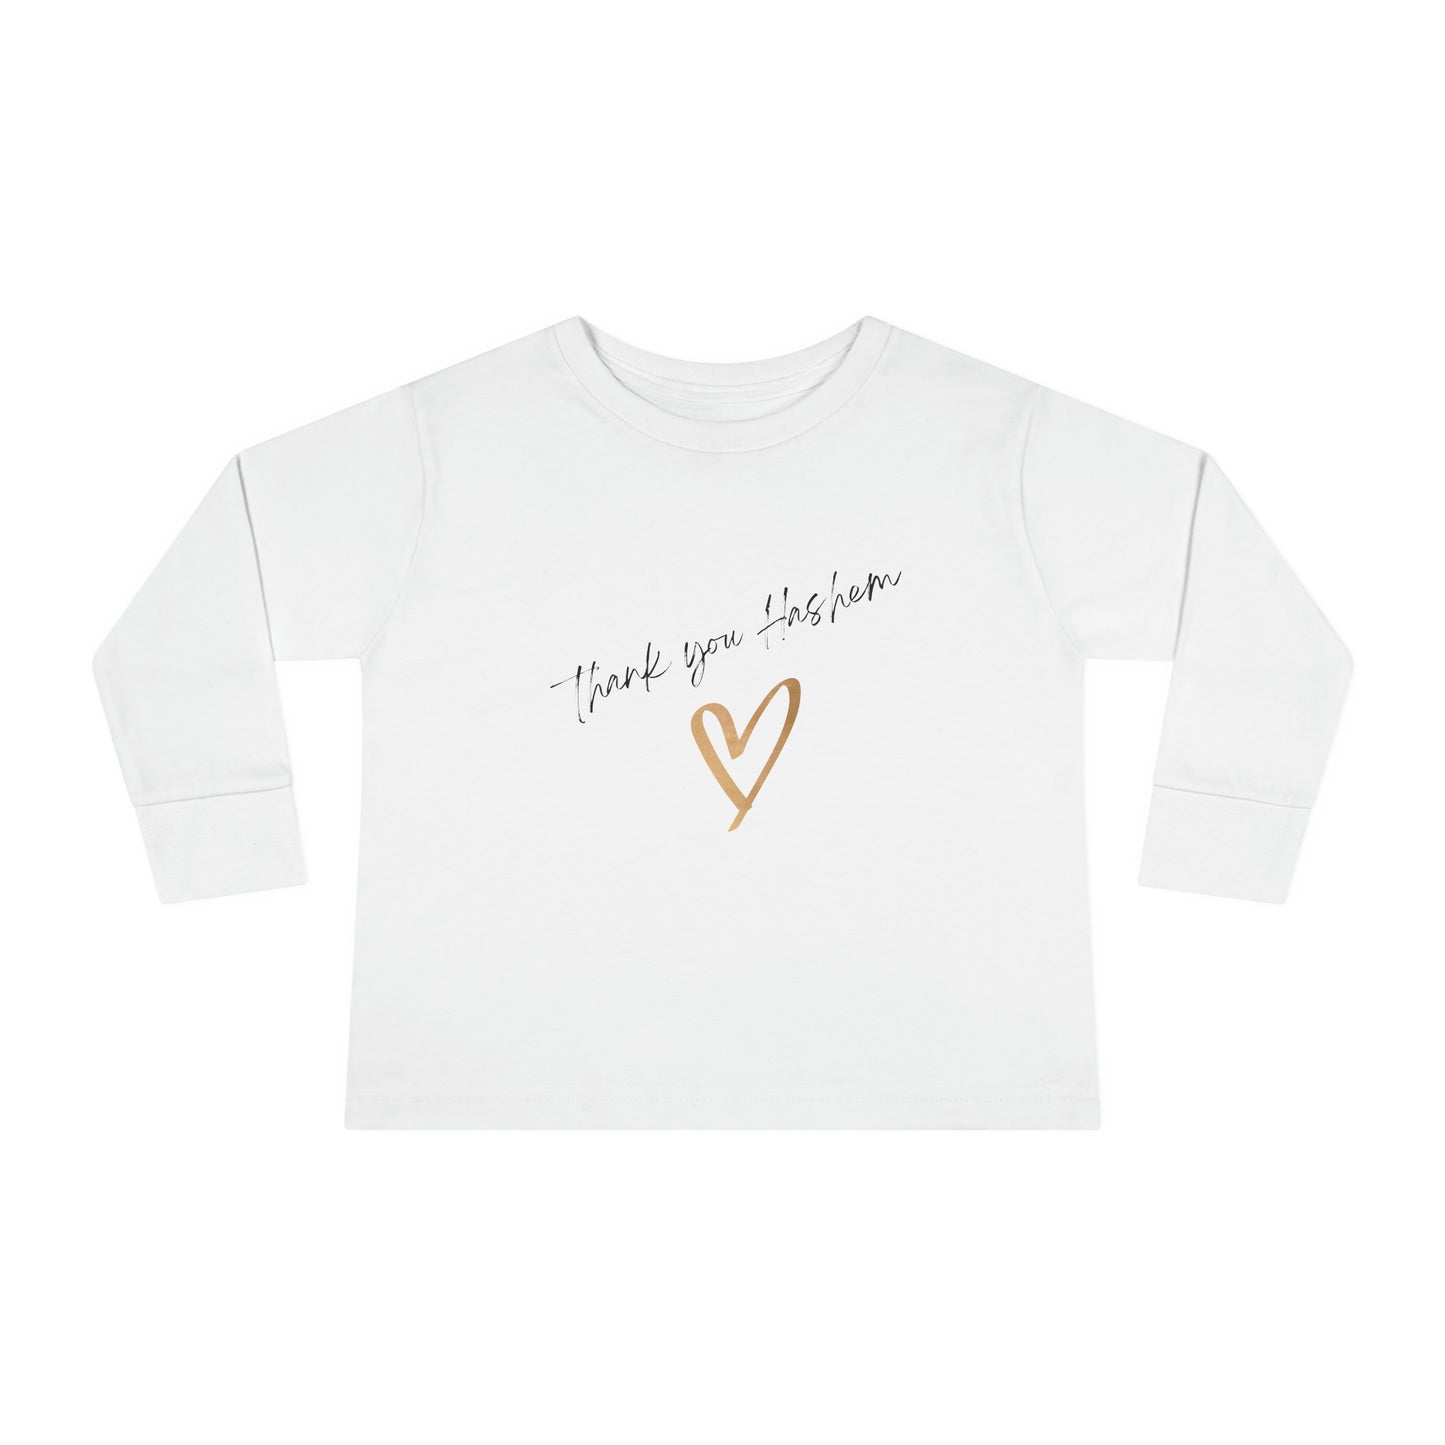 Toddler Girls' Long Sleeve Thank you Hashem t-shirt